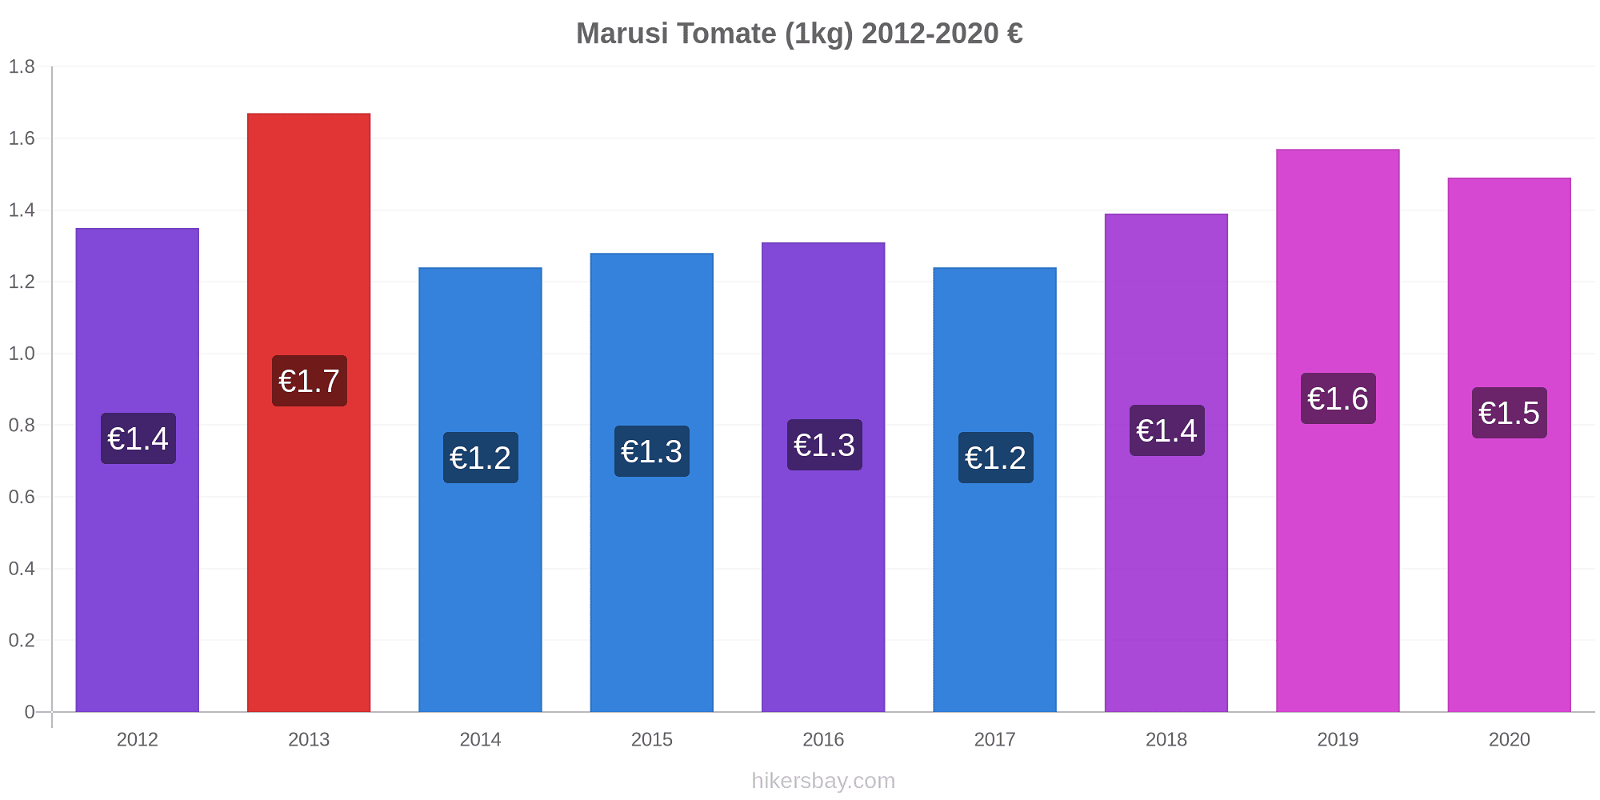 Marusi cambios de precios Tomate (1kg) hikersbay.com